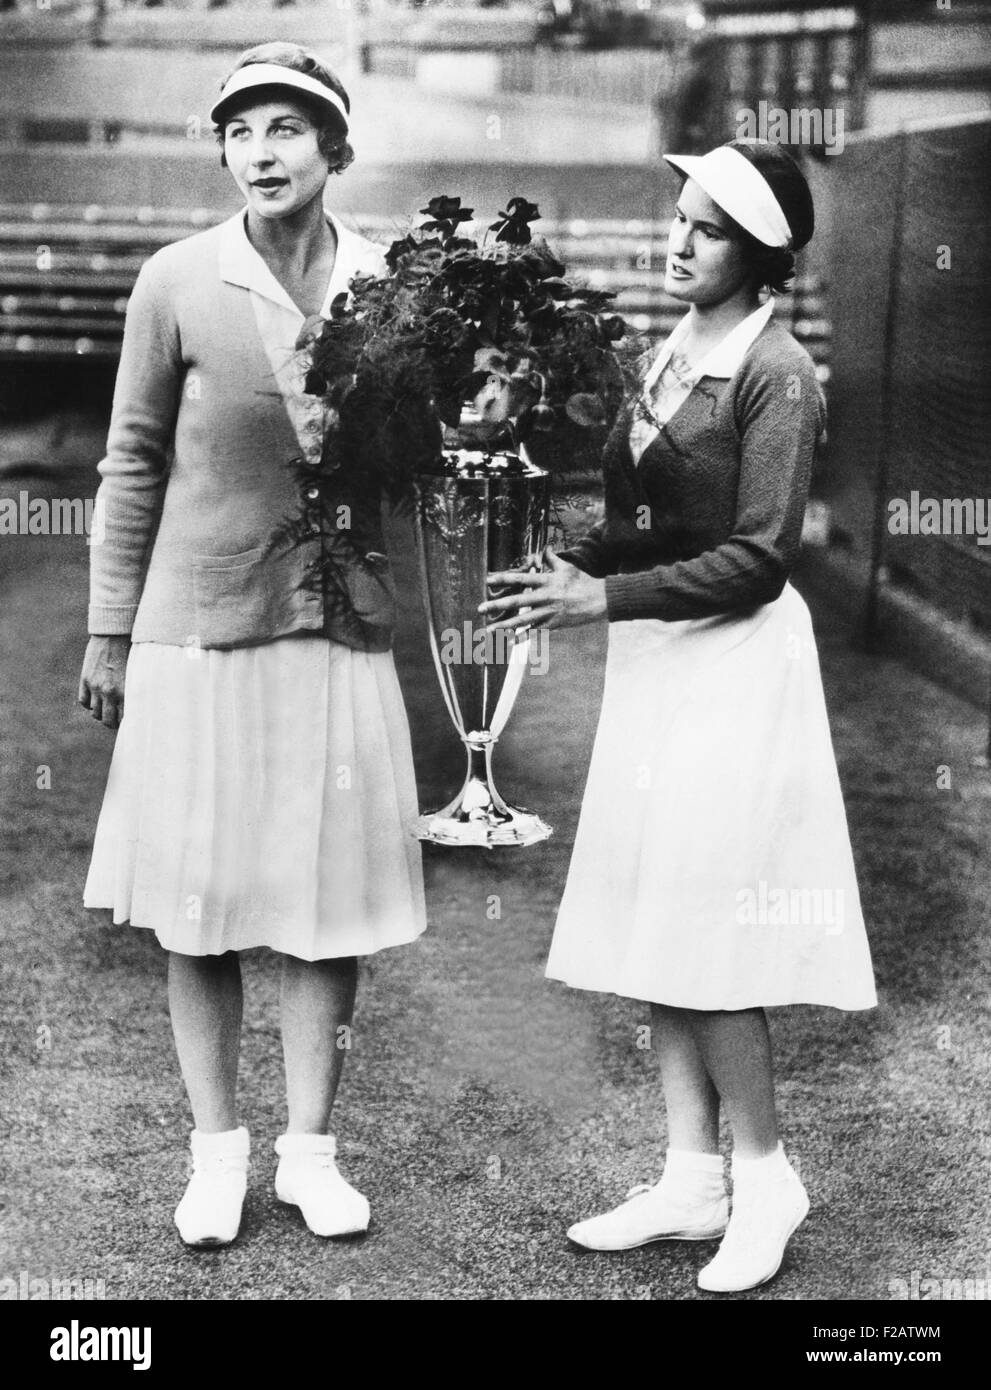 Helen Wills Moody (links) und Sarah Palfrey, mit den Wightman Cup. 20. Juni 1932. Die siegreiche Doppel-Partner präsentierten die Trophäe Prinzessin Victoria. Amerika beibehalten Wightman Cup im Jahr 1932 gegen das britische Team mit einem Score von 4 Spiele bis 3. Auf den Tennisplätzen an Wimbledon, England wurde der Tennis gespielt. (CSU 2015 11 1580) Stockfoto